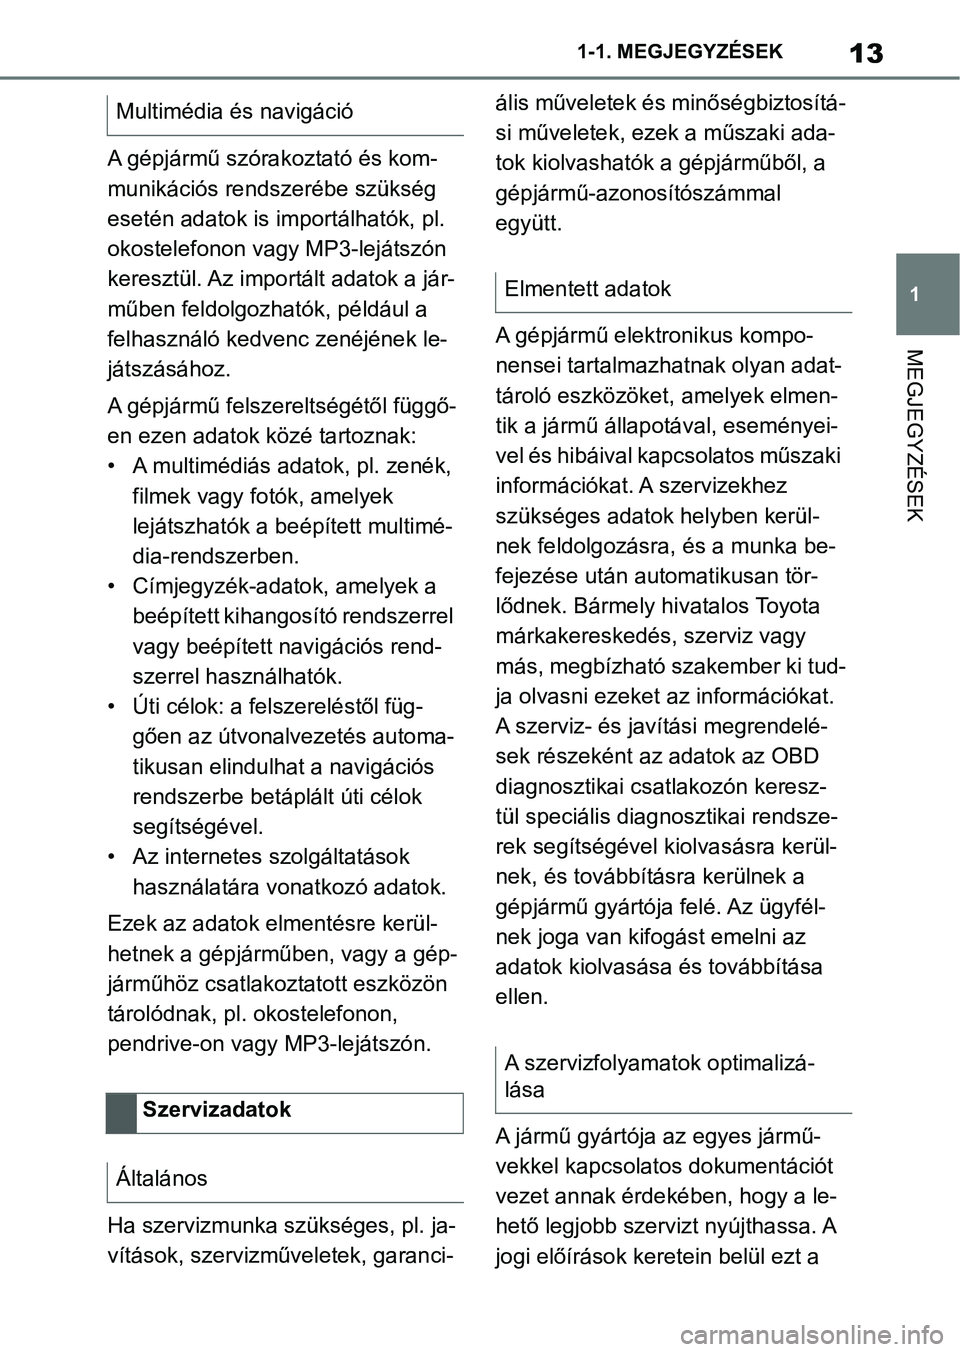 TOYOTA SUPRA 2020  Kezelési útmutató (in Hungarian) 13
1
1-1. MEGJEGYZÉSEK
MEGJEGYZÉSEK
A gépjármű szórakoztató és kom-
munikációs rendszerébe szükség 
esetén adatok is importálhatók, pl. 
okostelefonon vagy MP3-lejátszón 
keresztül.